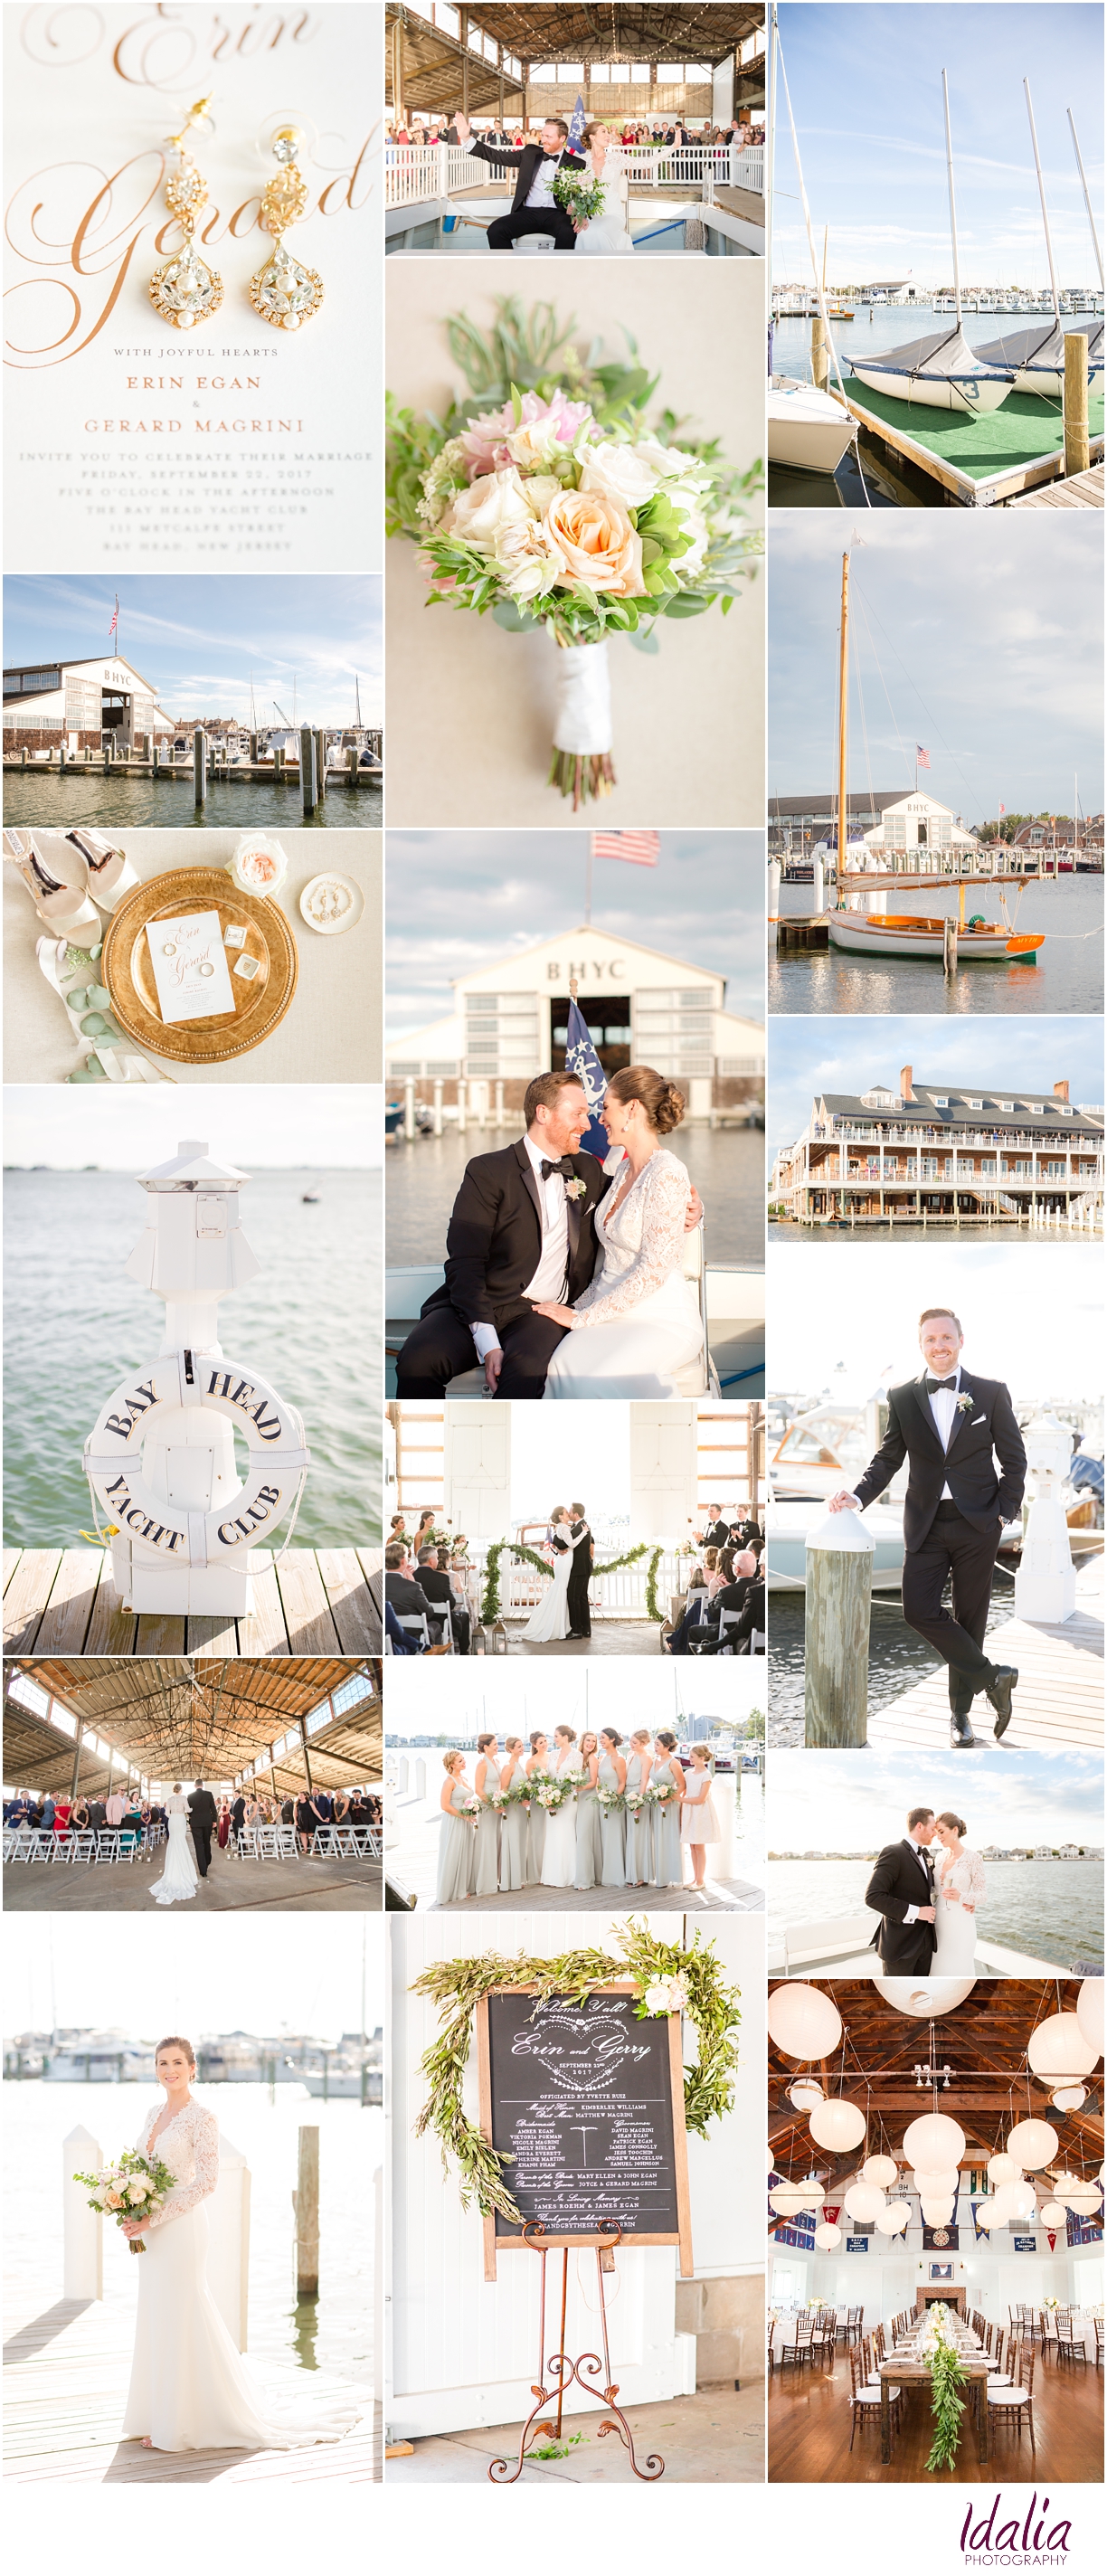 Bay Head Yacht Club Wedding Venue | Bay Head NJ Venue | Photos by Idalia Photography